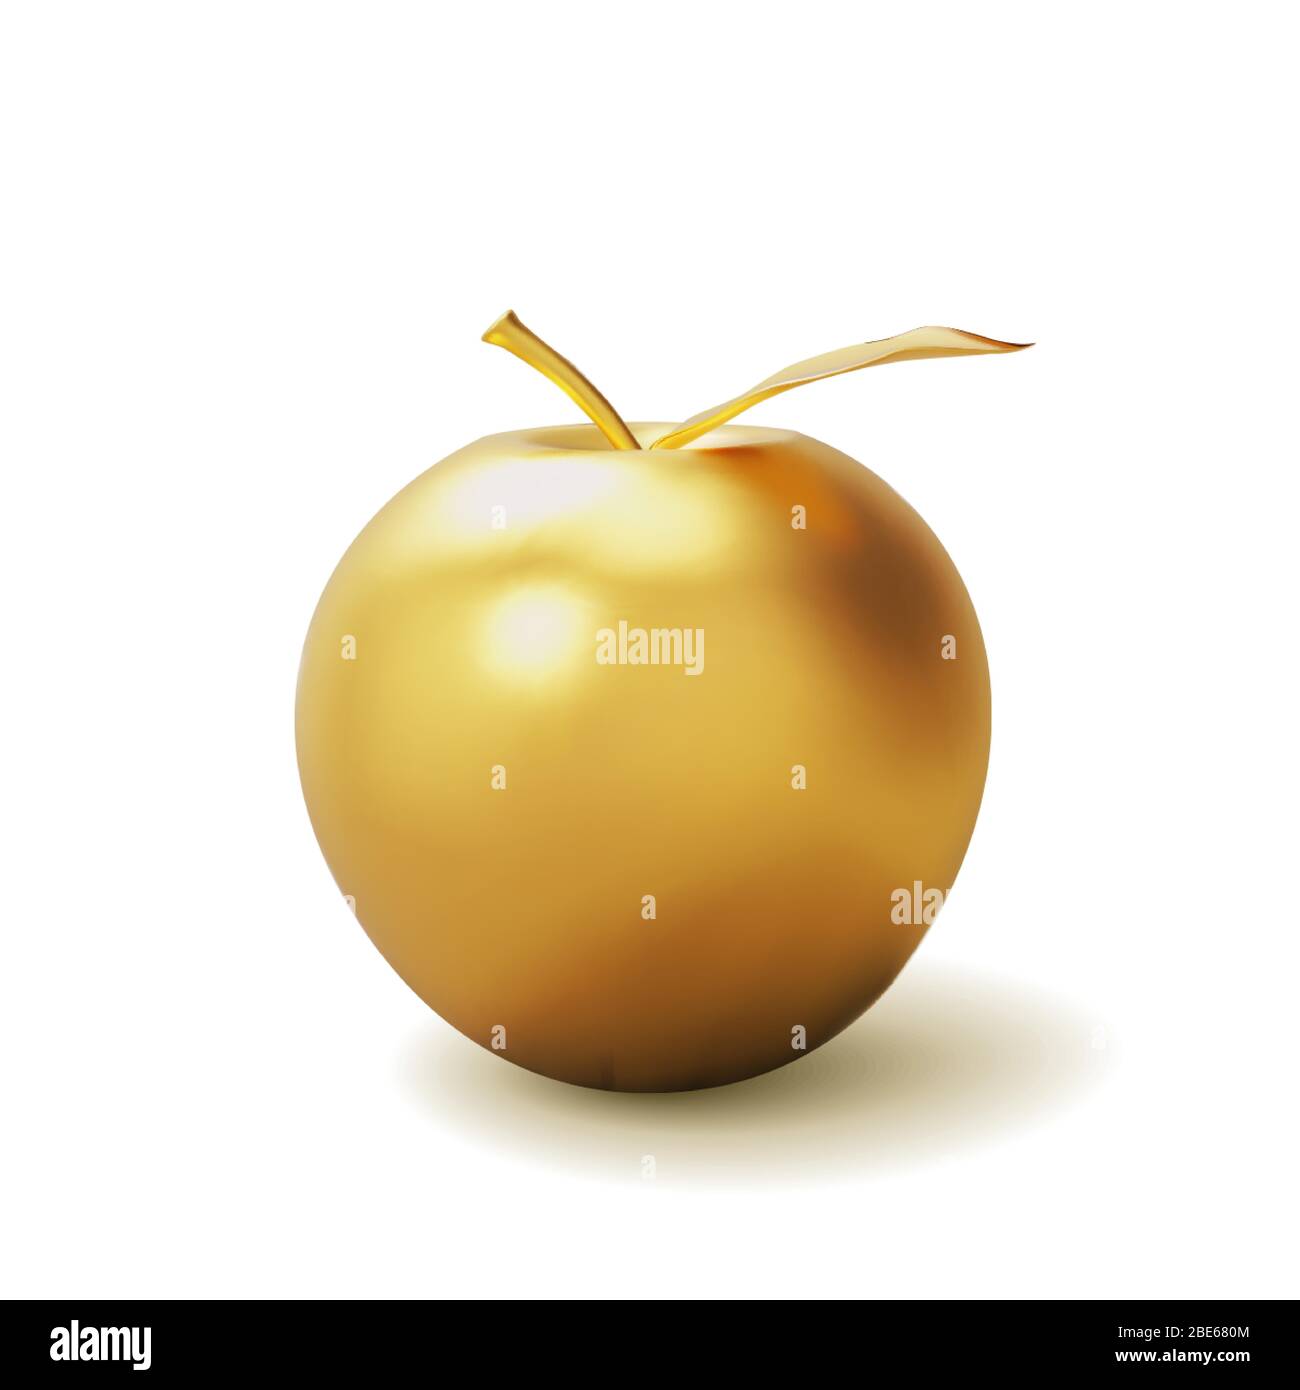 Pomme dorée réaliste isolée sur fond blanc. Modèle tridimensionnel pour les produits, la publicité, les bannières Web, les dépliants. Illustration vectorielle Illustration de Vecteur